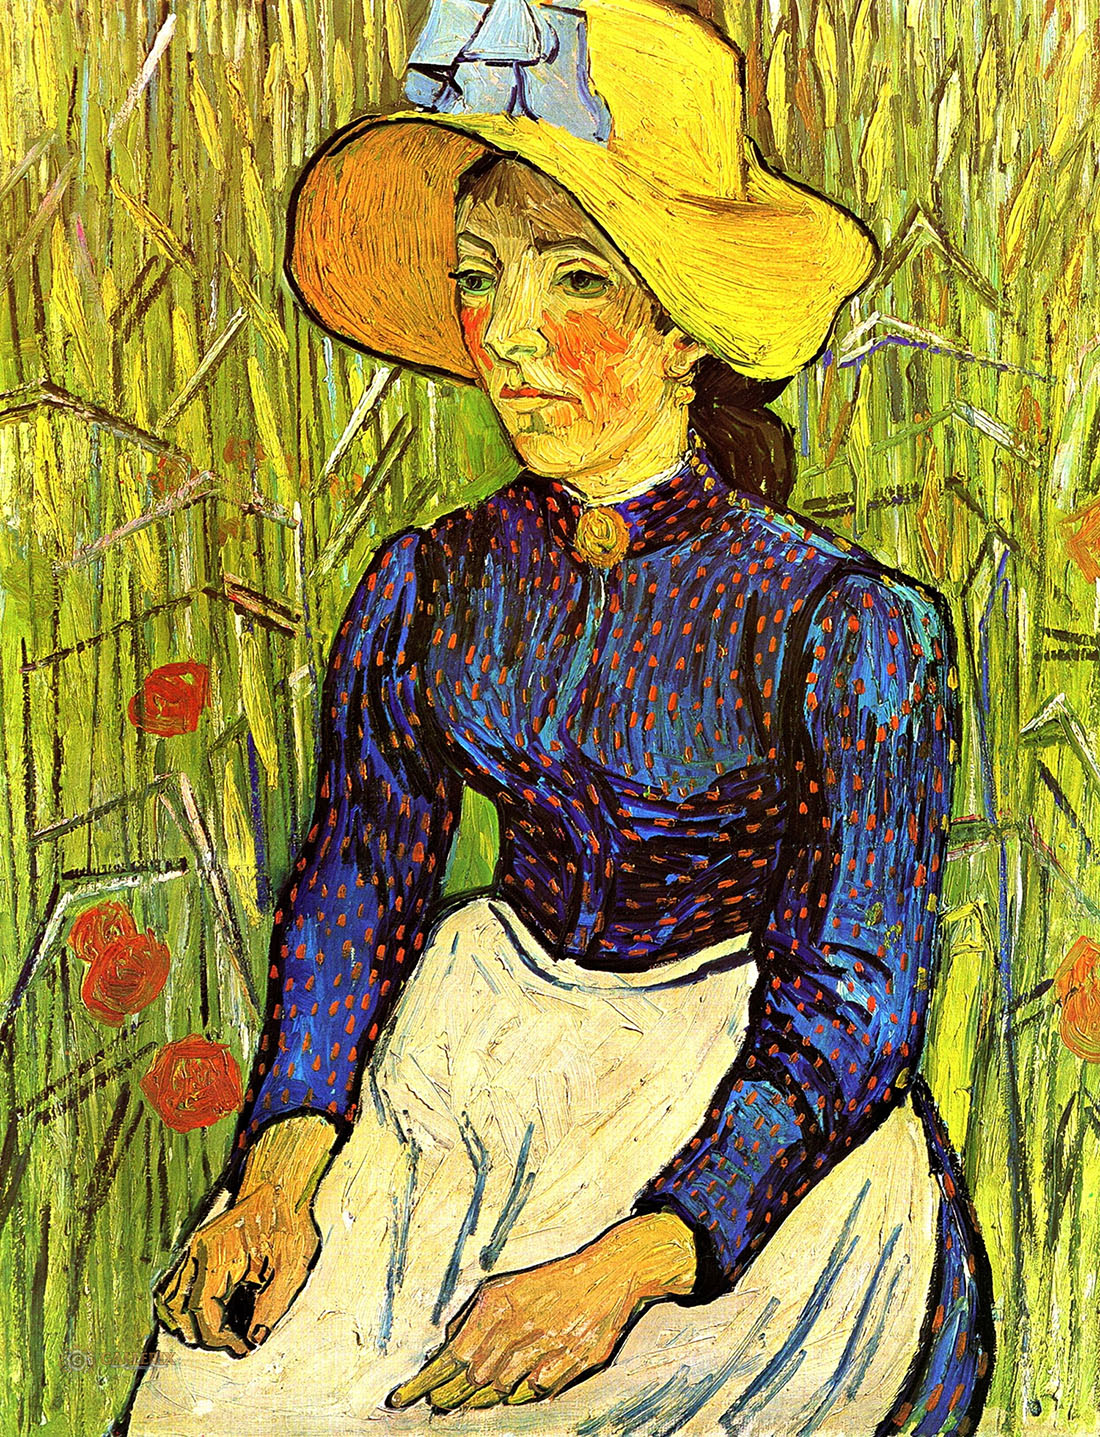 Винсент Ван Гог. "Молодая крестьянка в соломенной шляпке, сидящая в пшенице". 1890. Частная коллекция.